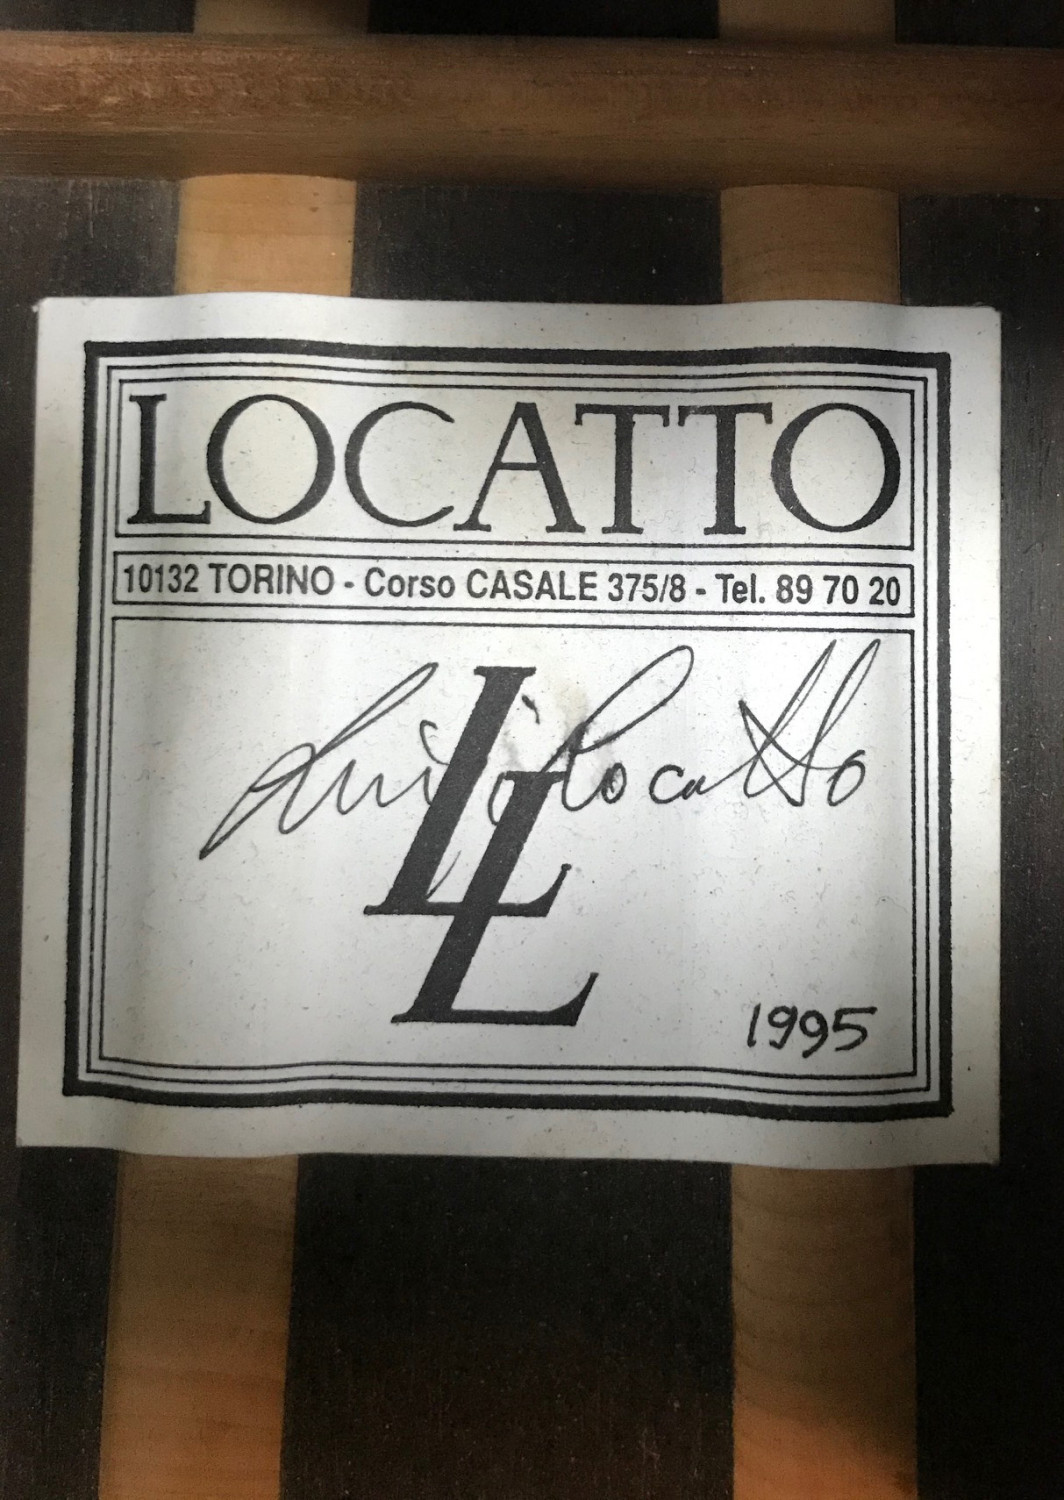 Luigi Locatto